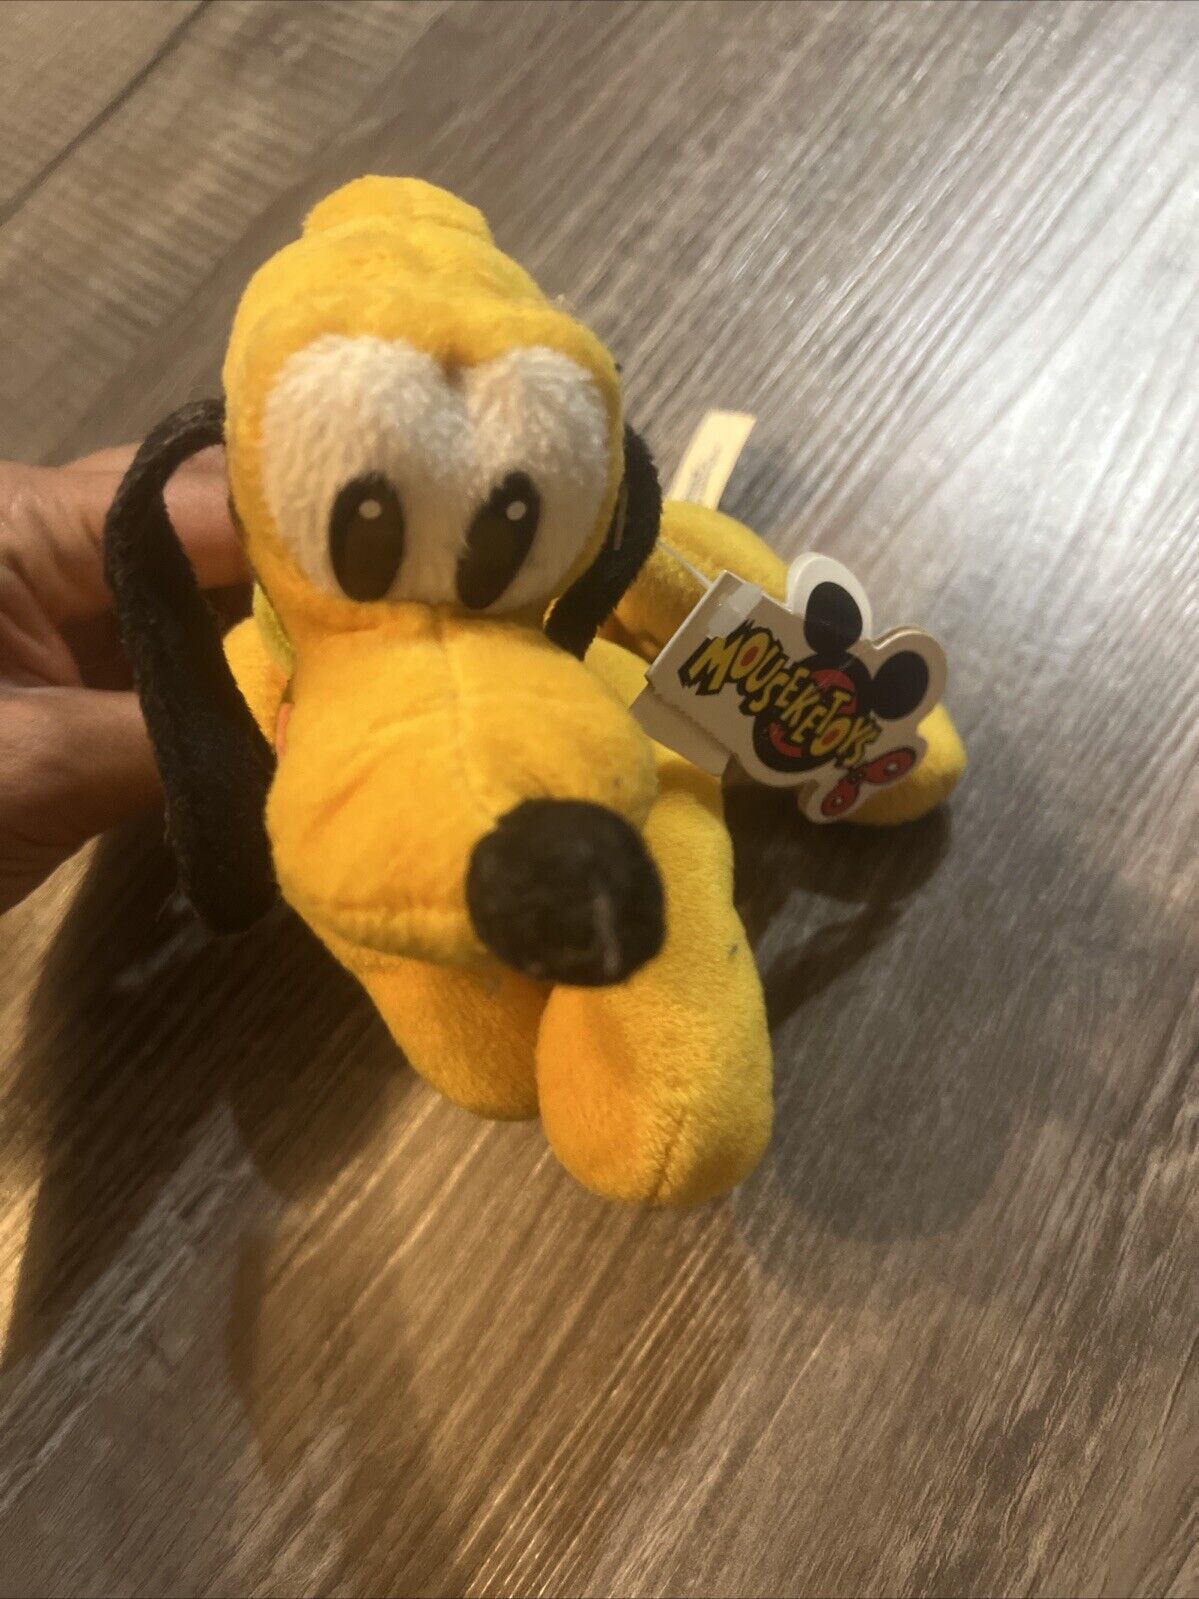 Disney Pluto Dog Mini Bean Bag Mouseketoys Stuffed Animal Plush Toy Yellow Used